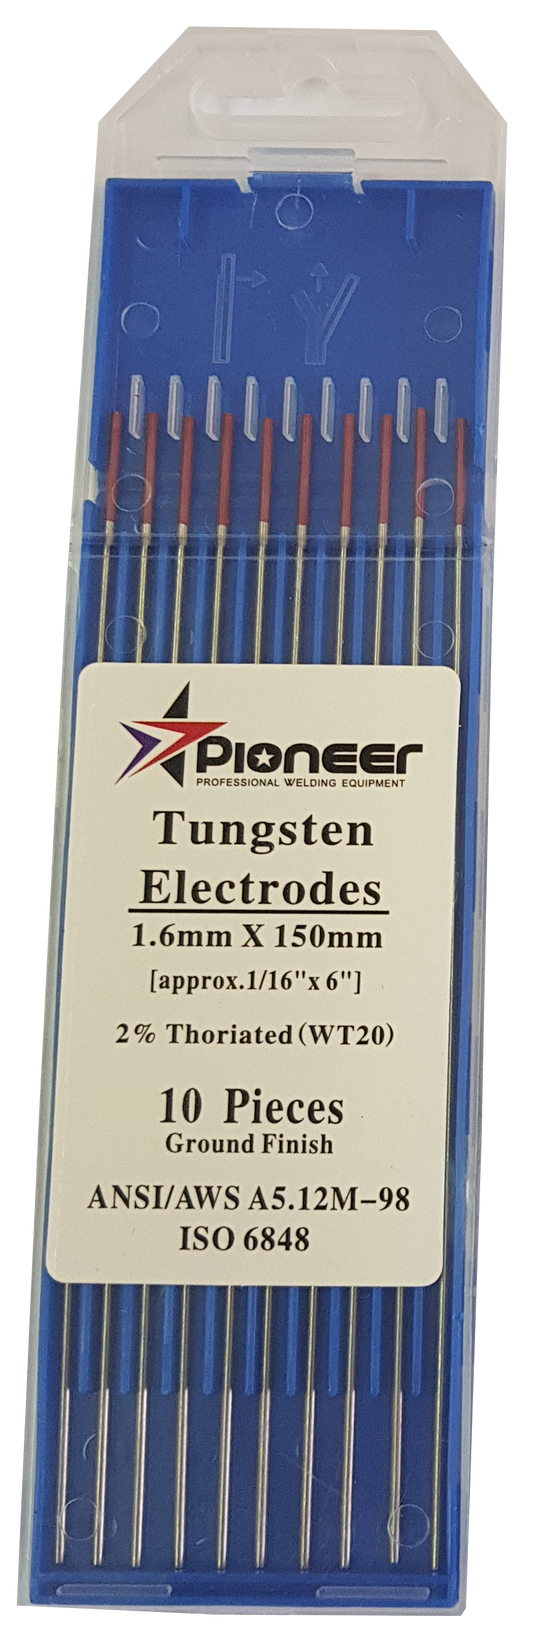 Tungsten Electrode Thoriated